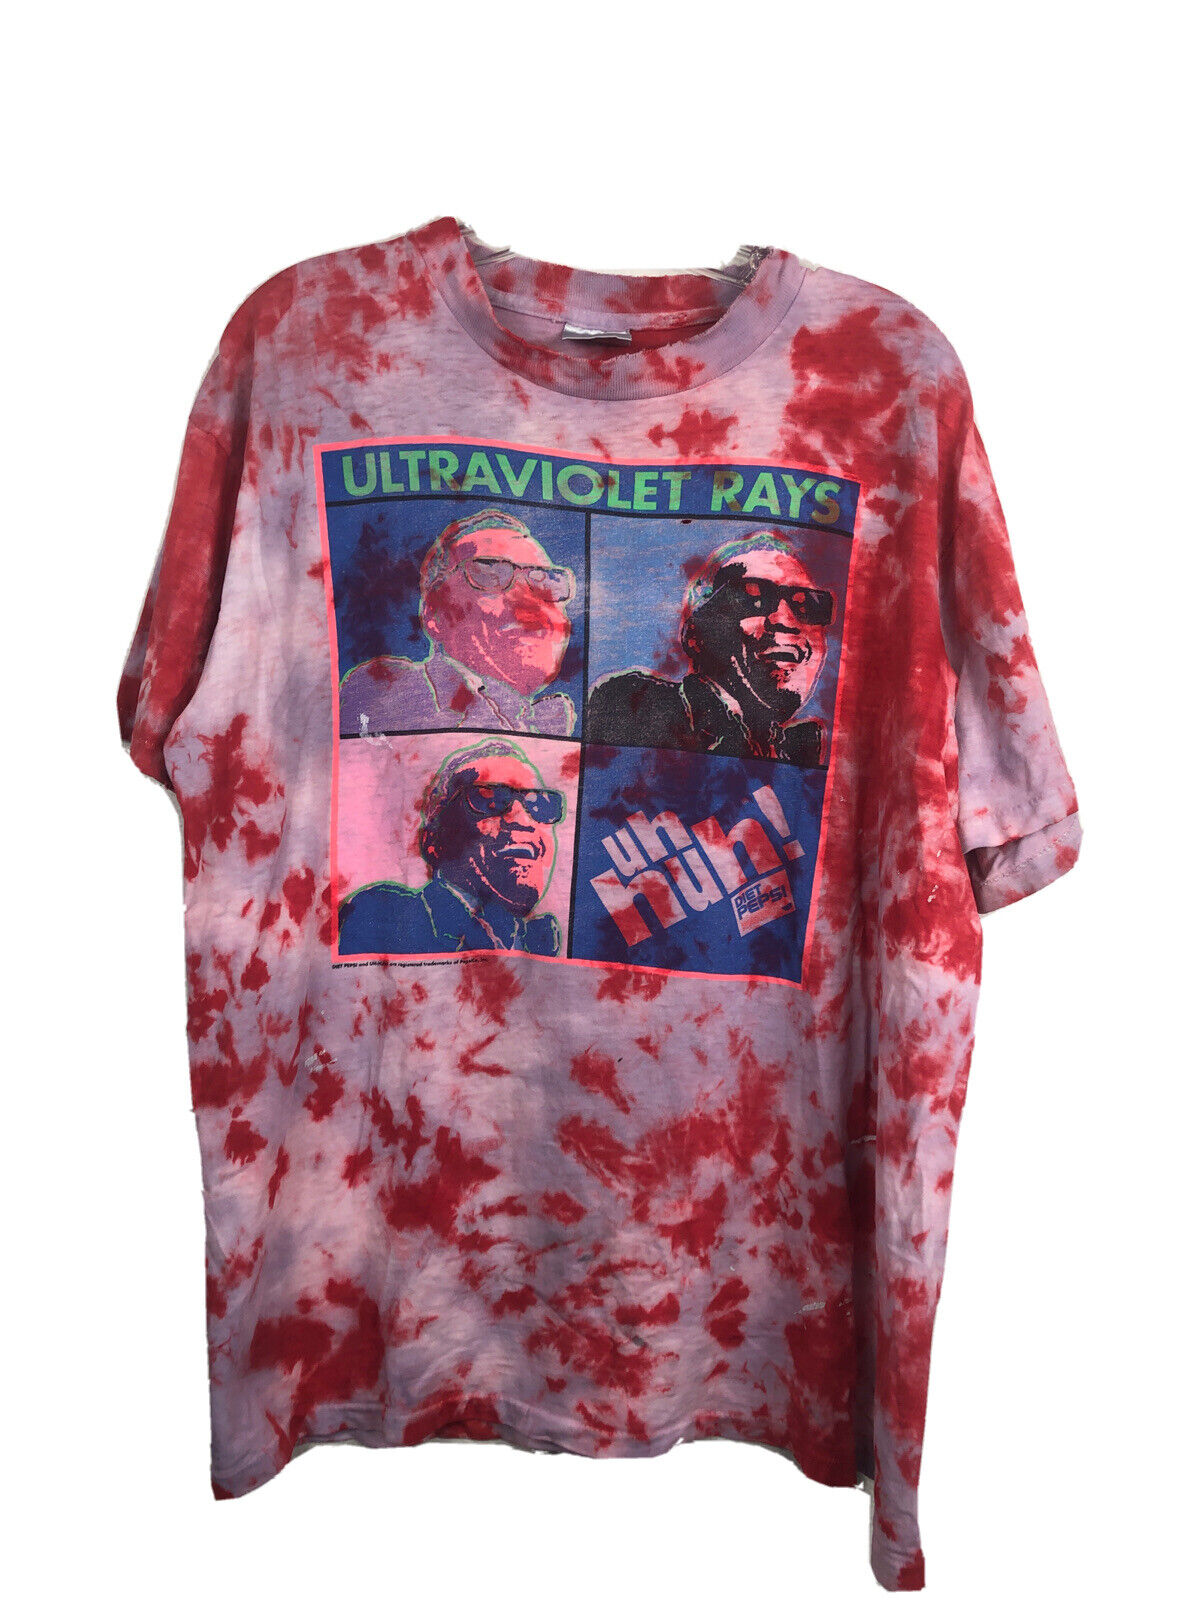 Ray Charles Vtg Diet Pepsi Uh Huh? T-Shirt Custom Dye - Men’s Large